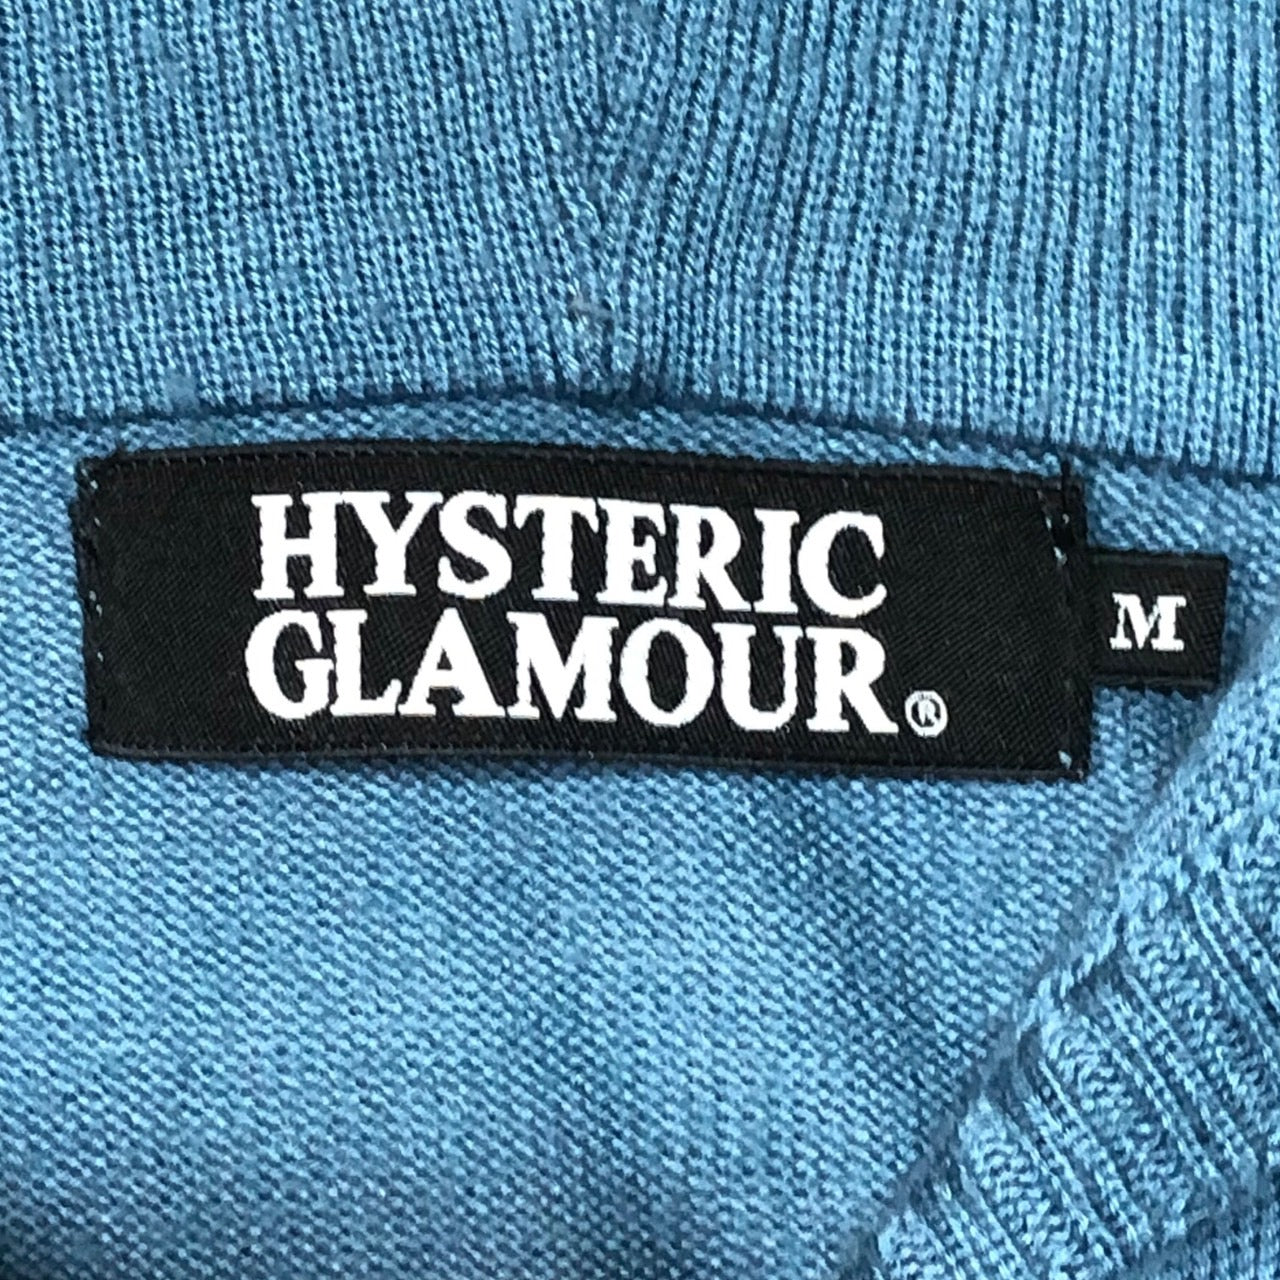 HYSTERIC GLAMOUR(ヒステリックグラマー) "HYS girl" High gauge hooded knit/ハイゲージフーデットニット/ジップパーカー/カーディガン 0203ND03 M スカイブルー